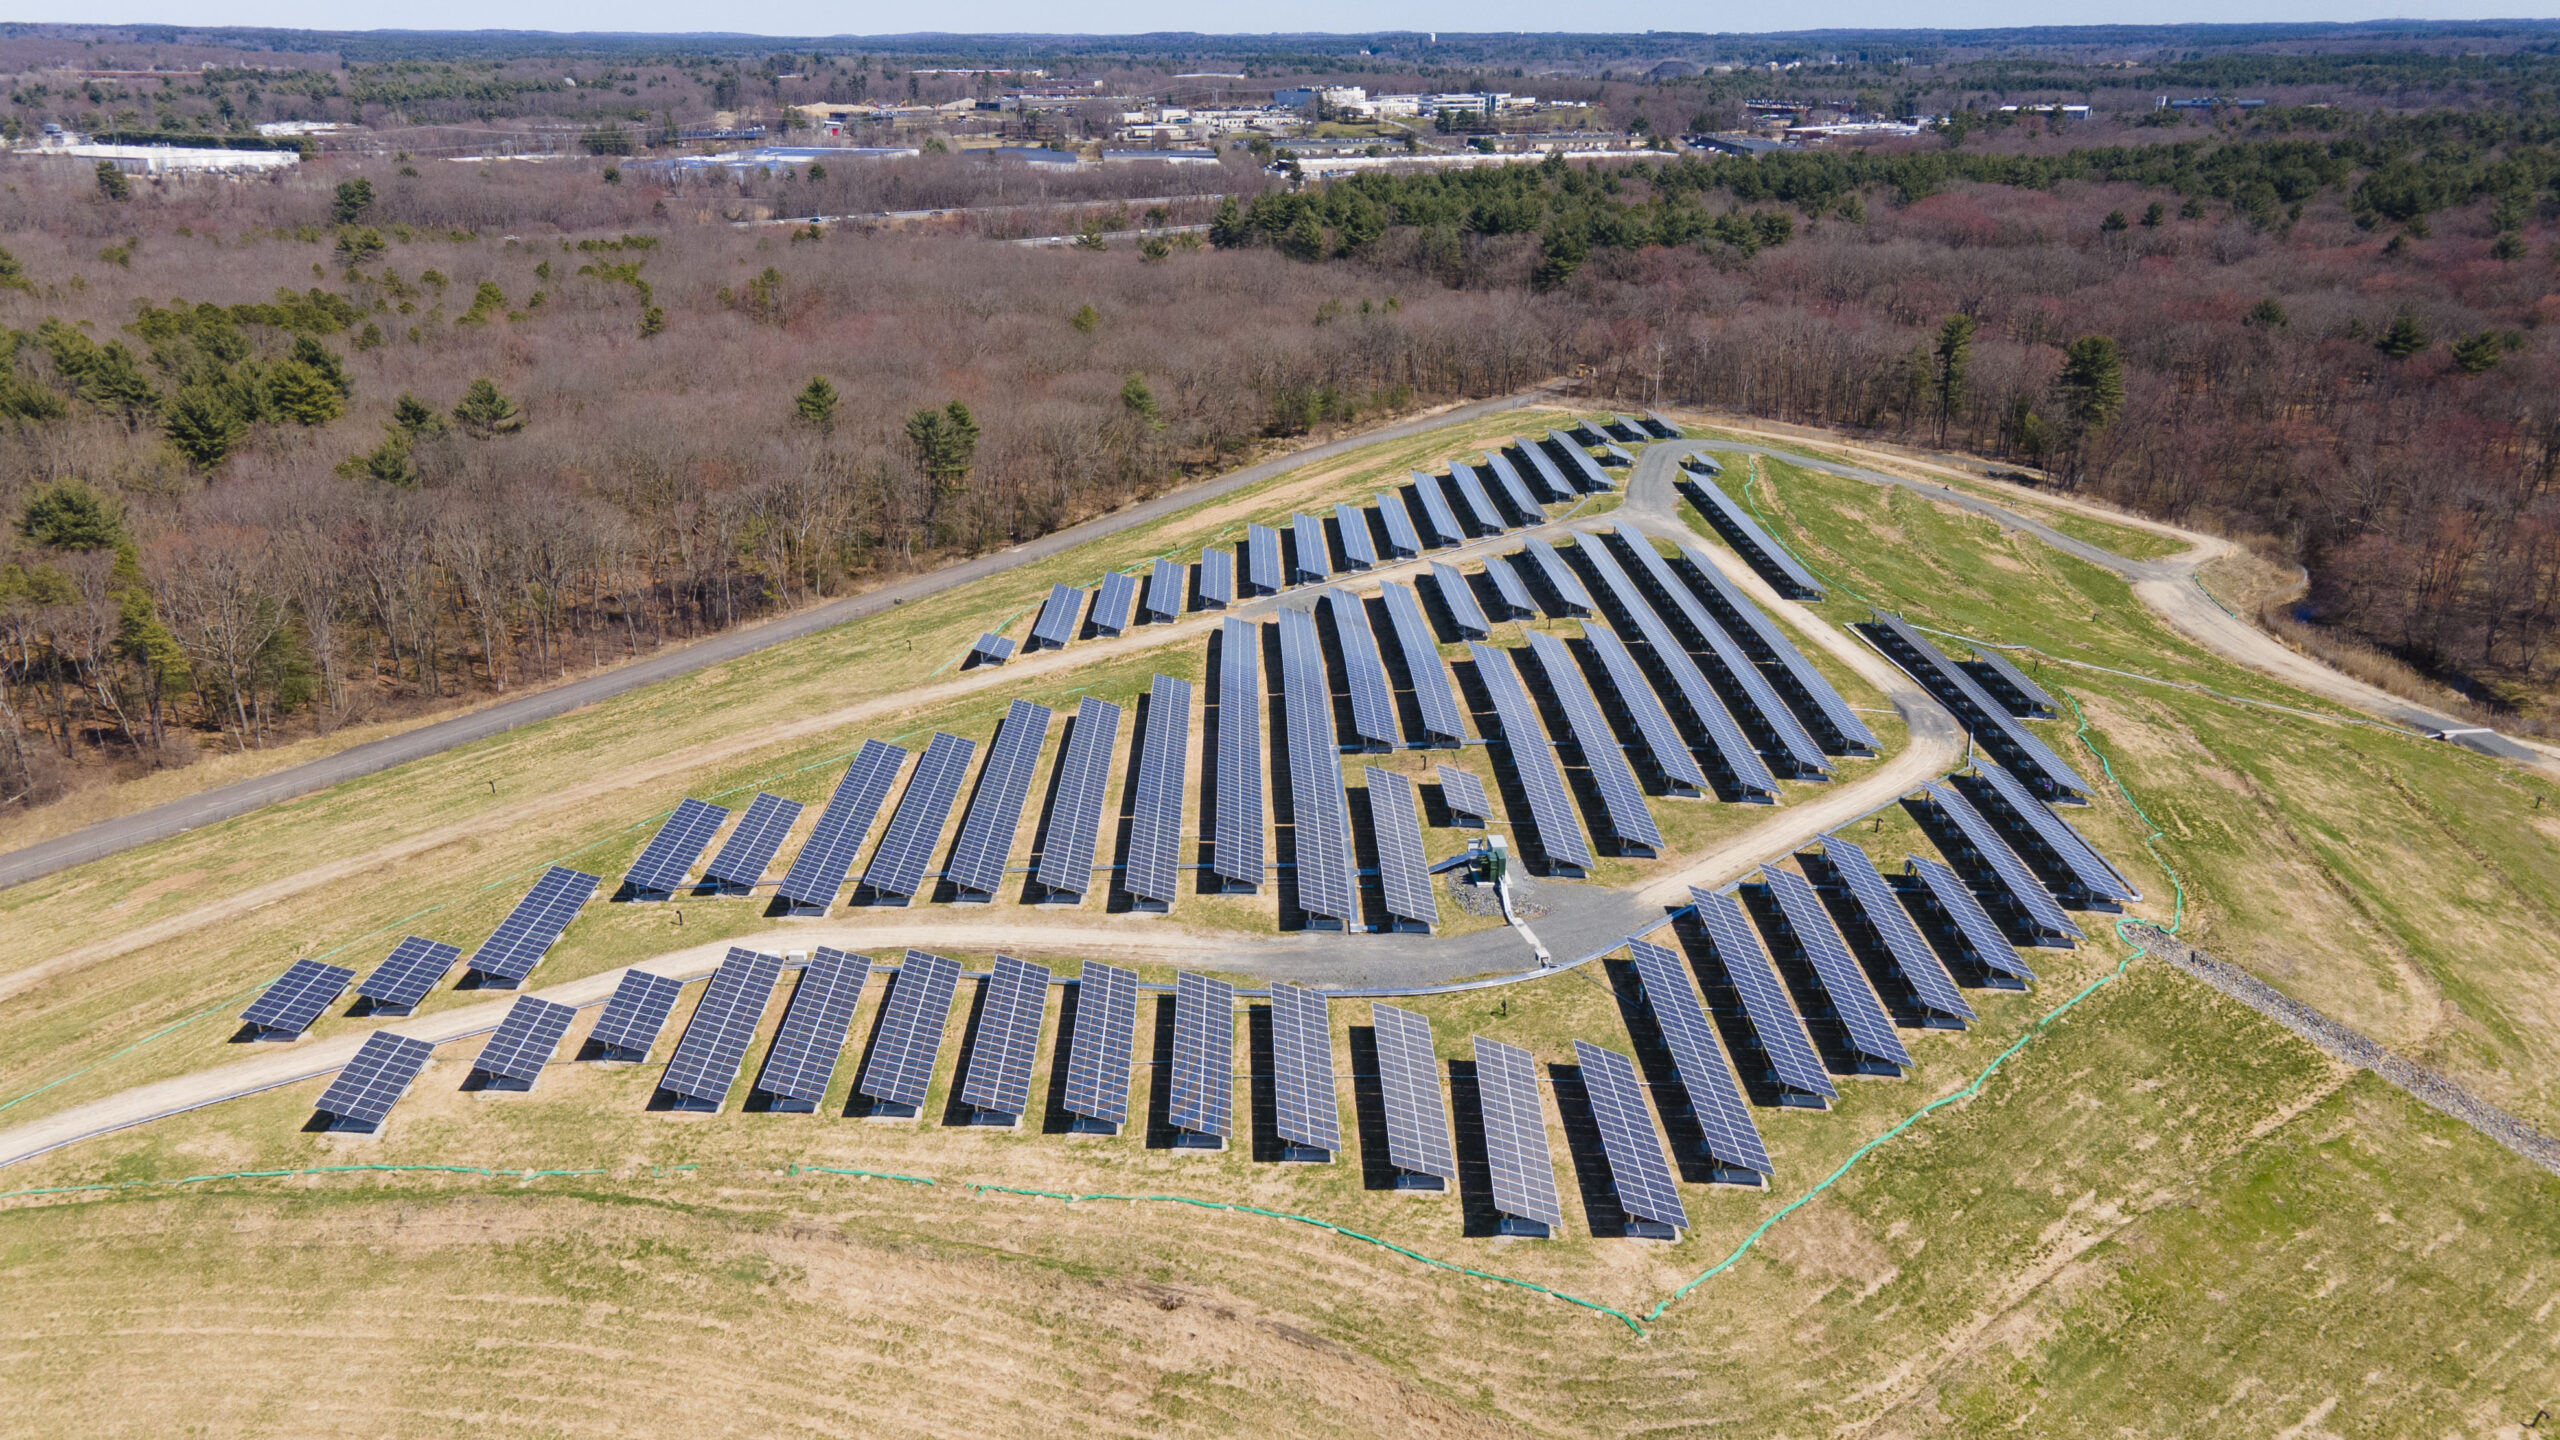 Solar Gardens by Syncarpha - Tewksbury Landfill Solar - community solar project in Tewksbury, MA - 1